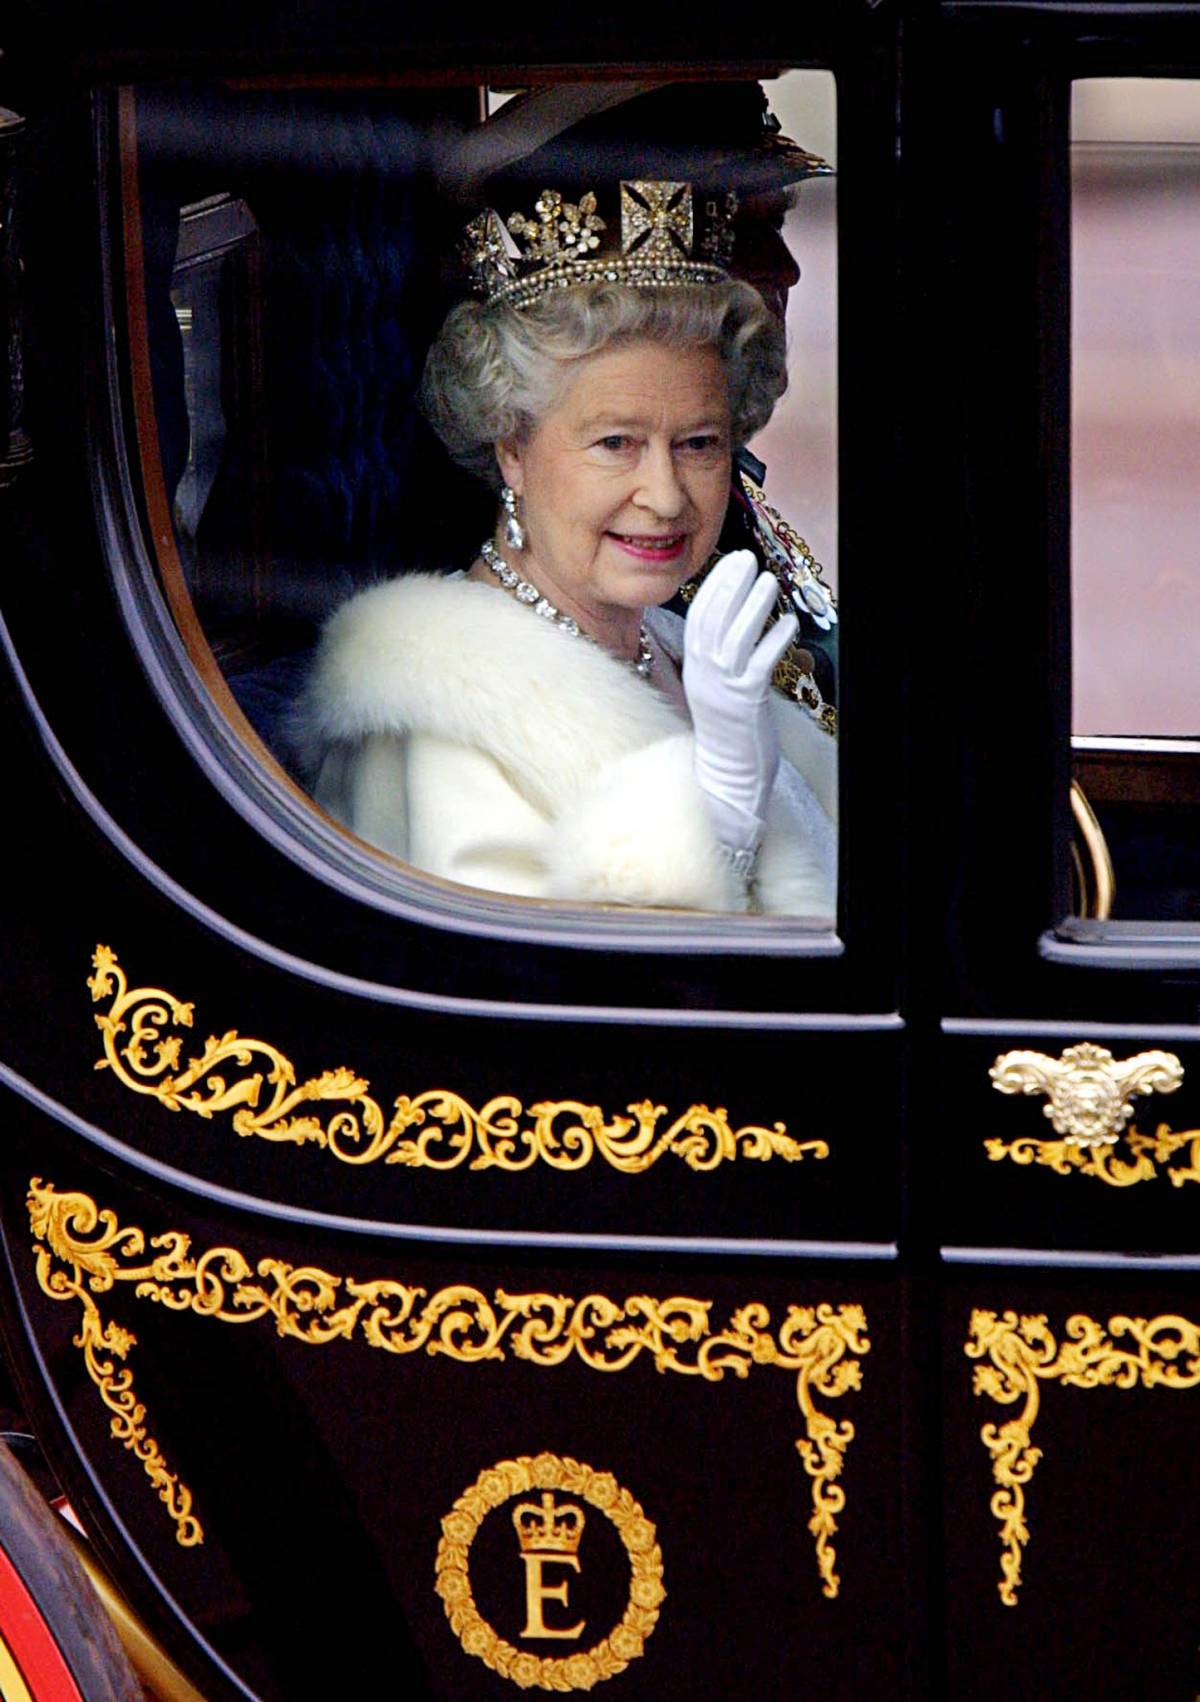 La regina Elisabetta lancia sul mercato un detersivo per piatti (costoso)